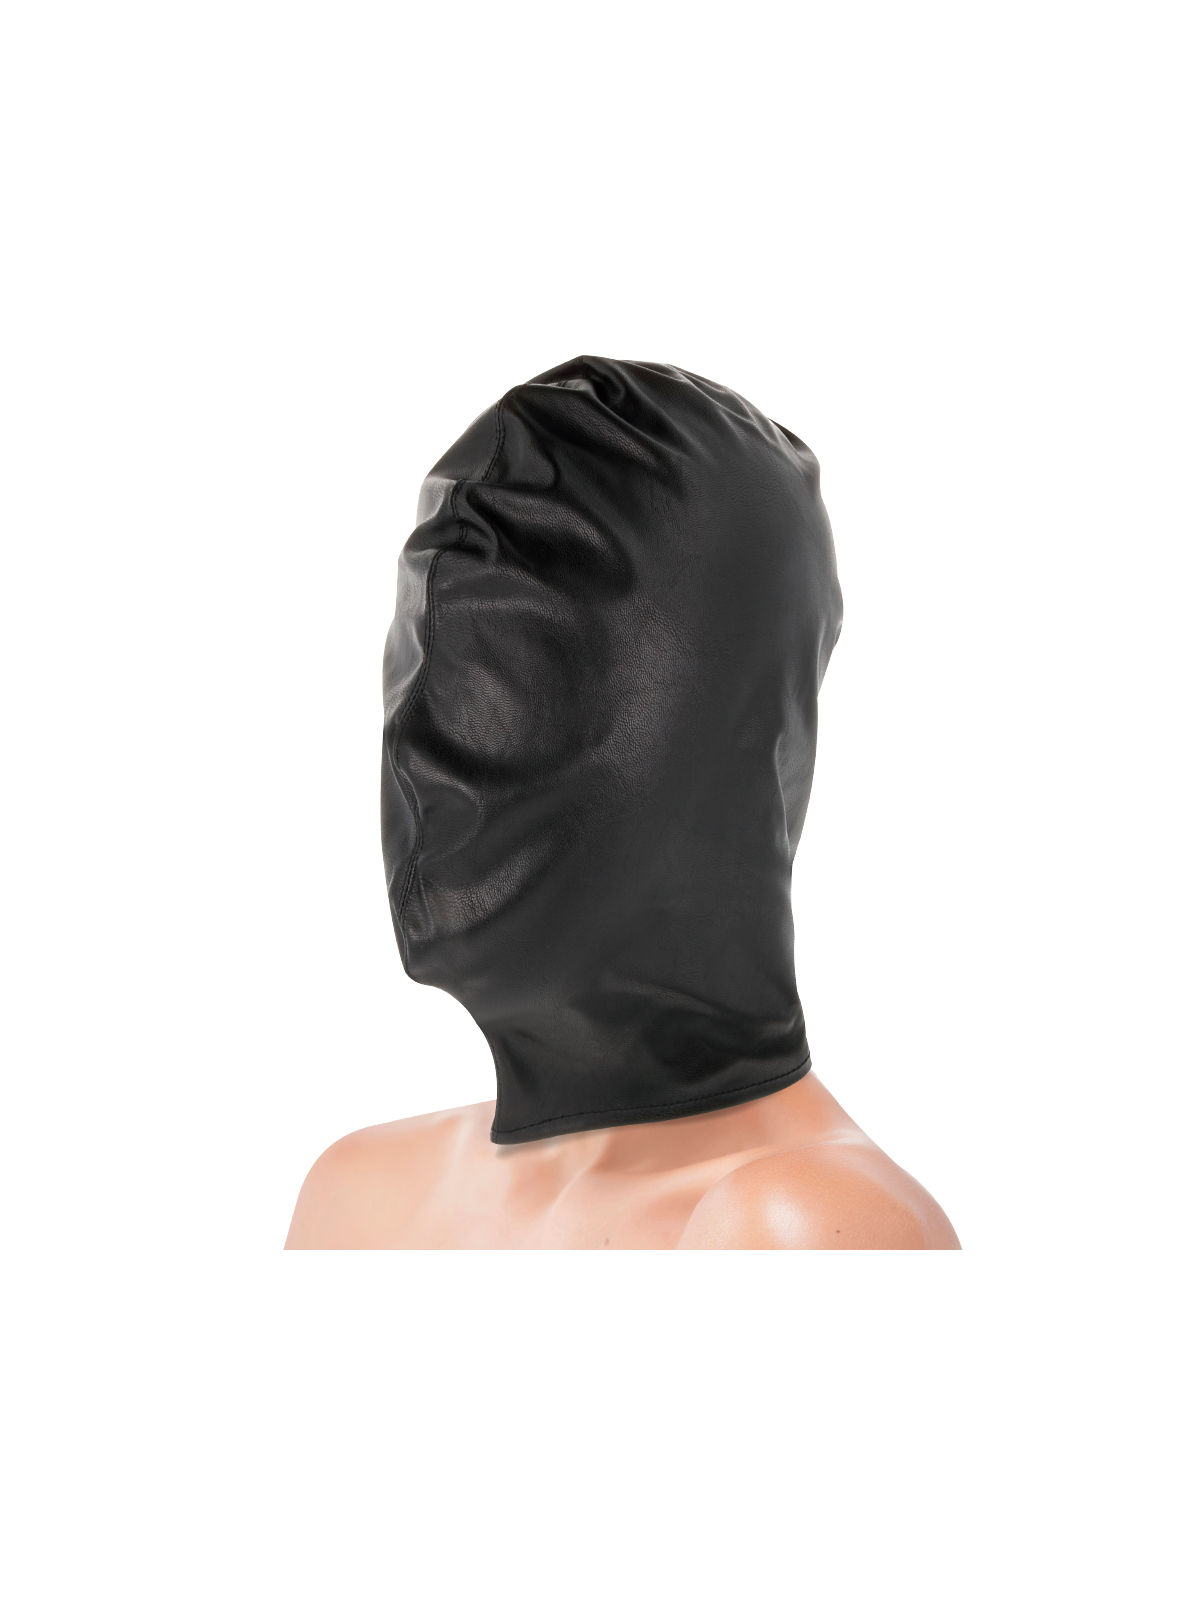 Darkness Subjugation Máscara Negro - Comprar Máscara erótica Darkness - Máscaras eróticas (1)